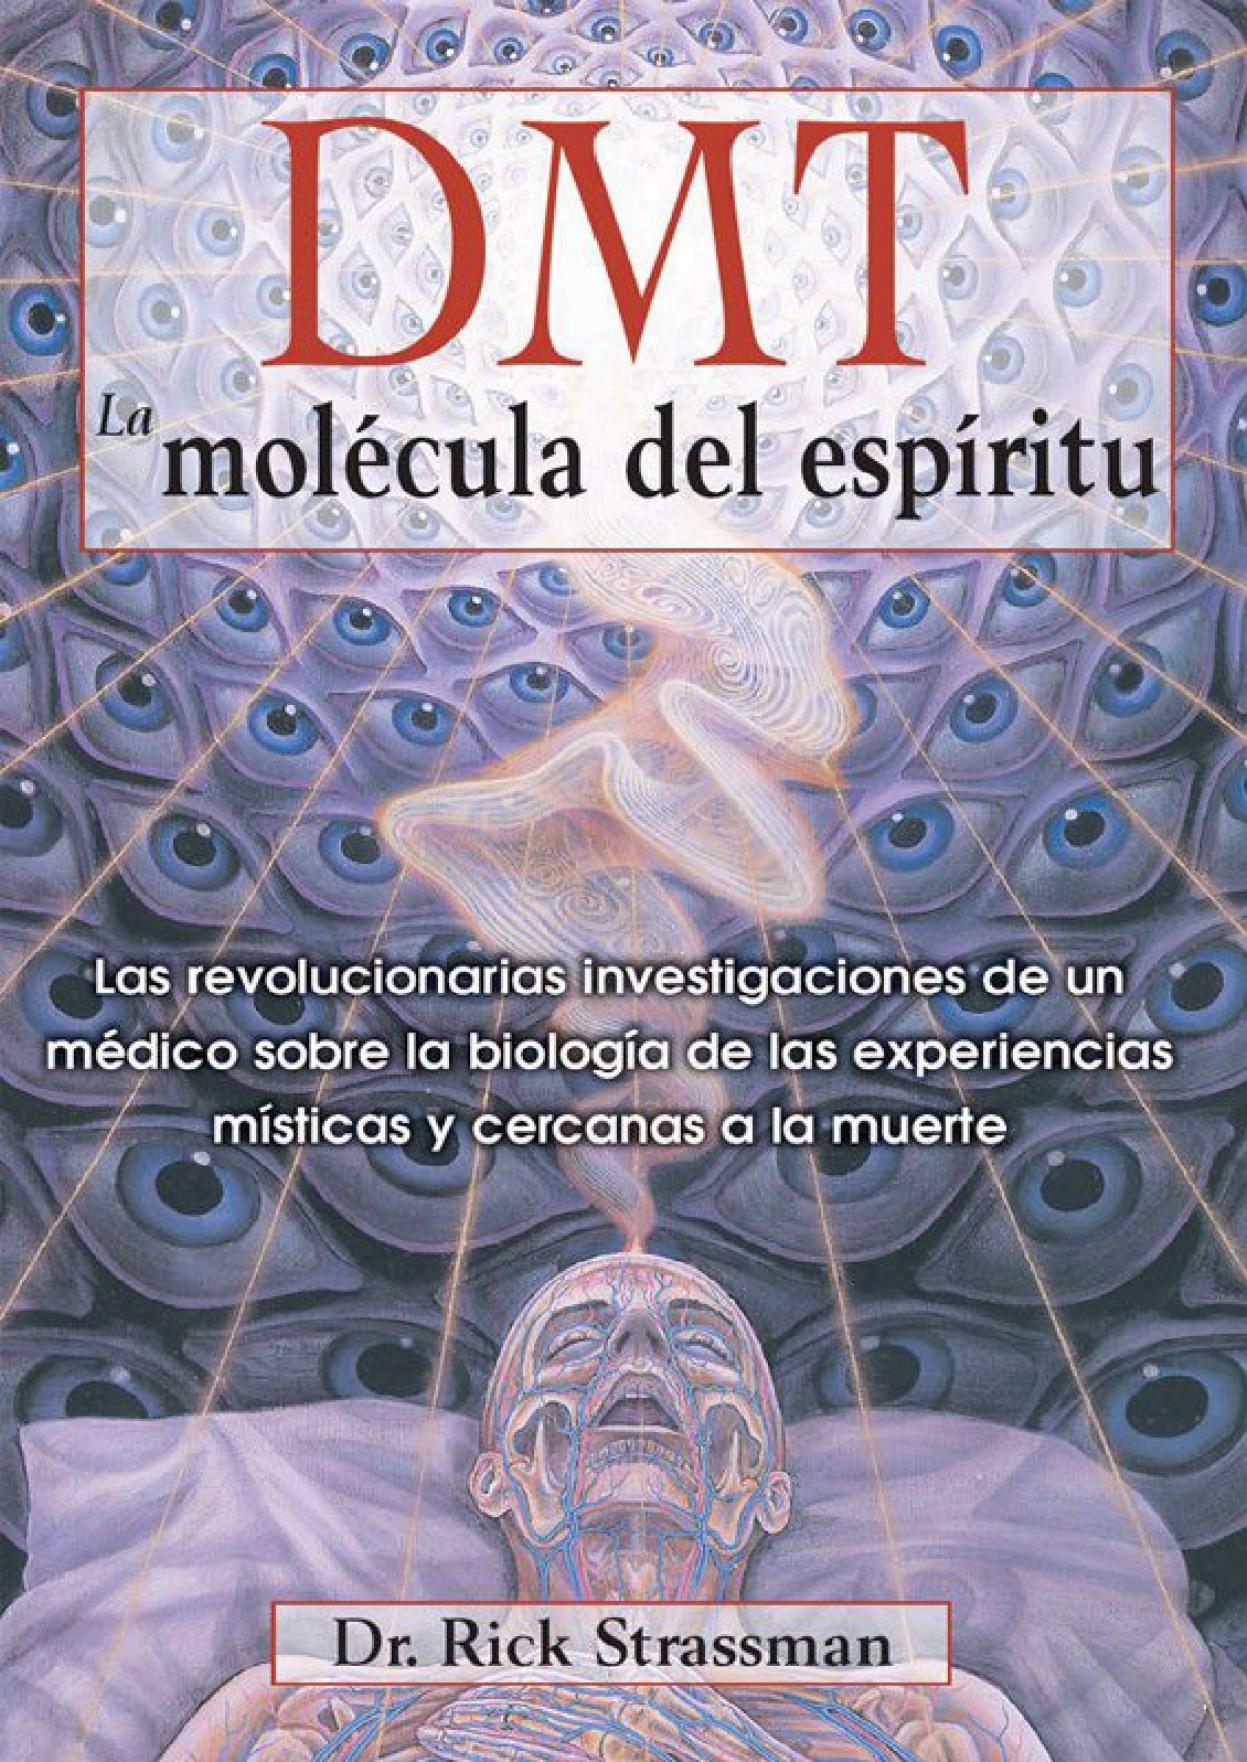 DMT: La molécula del espíritu Las revolucionarias investigaciones de un médico sobre la biología de las experiencias místicas... (Rick Strassman)9781594774454